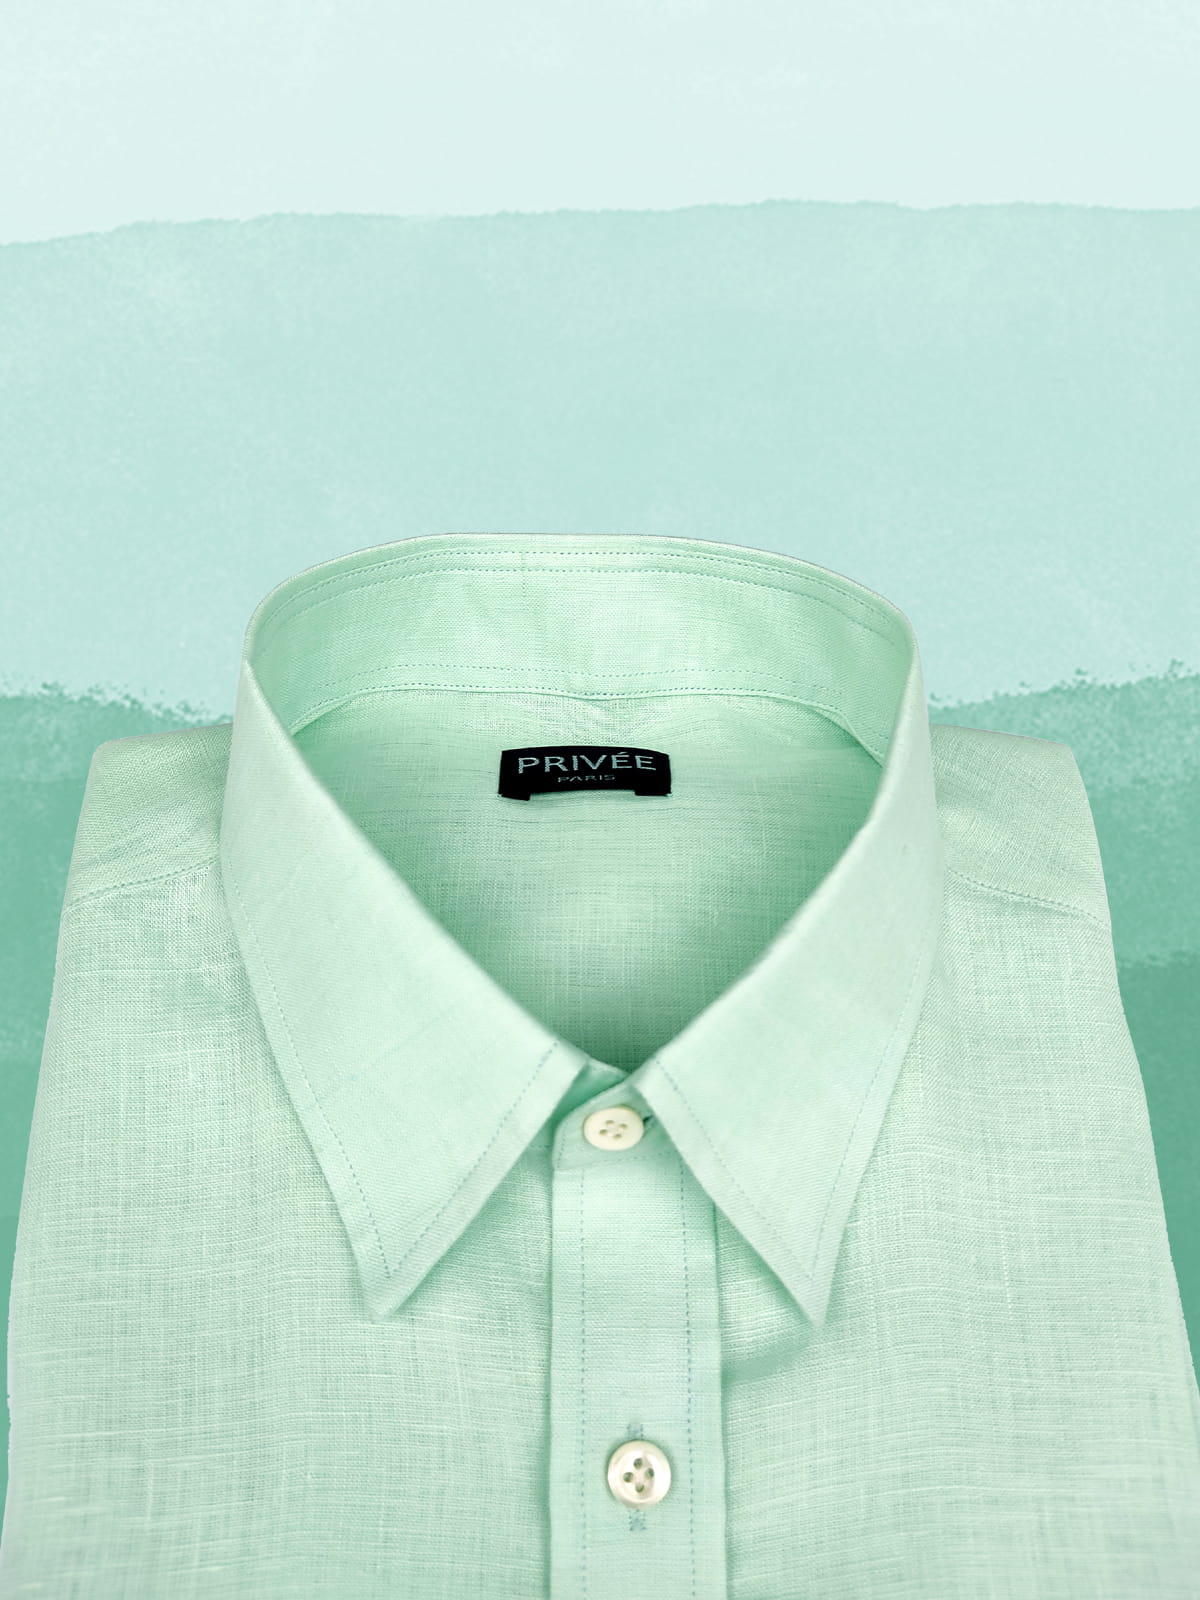 Pistachio Green Linen Shirt